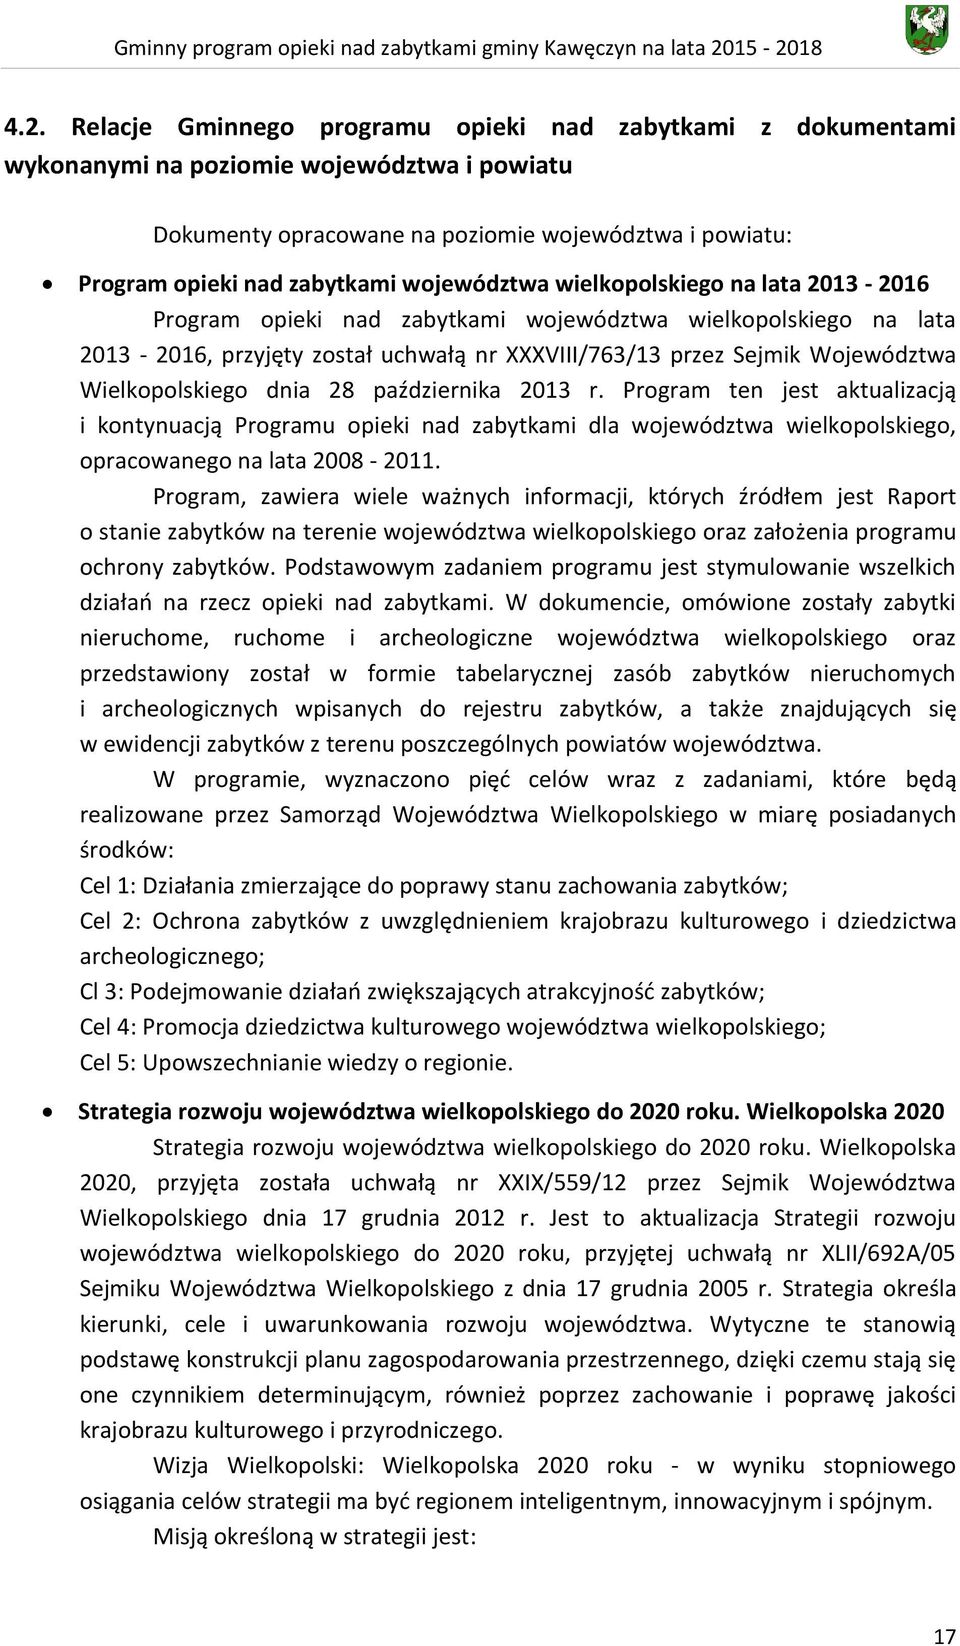 Wielkopolskiego dnia 28 października 2013 r. Program ten jest aktualizacją i kontynuacją Programu opieki nad zabytkami dla województwa wielkopolskiego, opracowanego na lata 2008-2011.